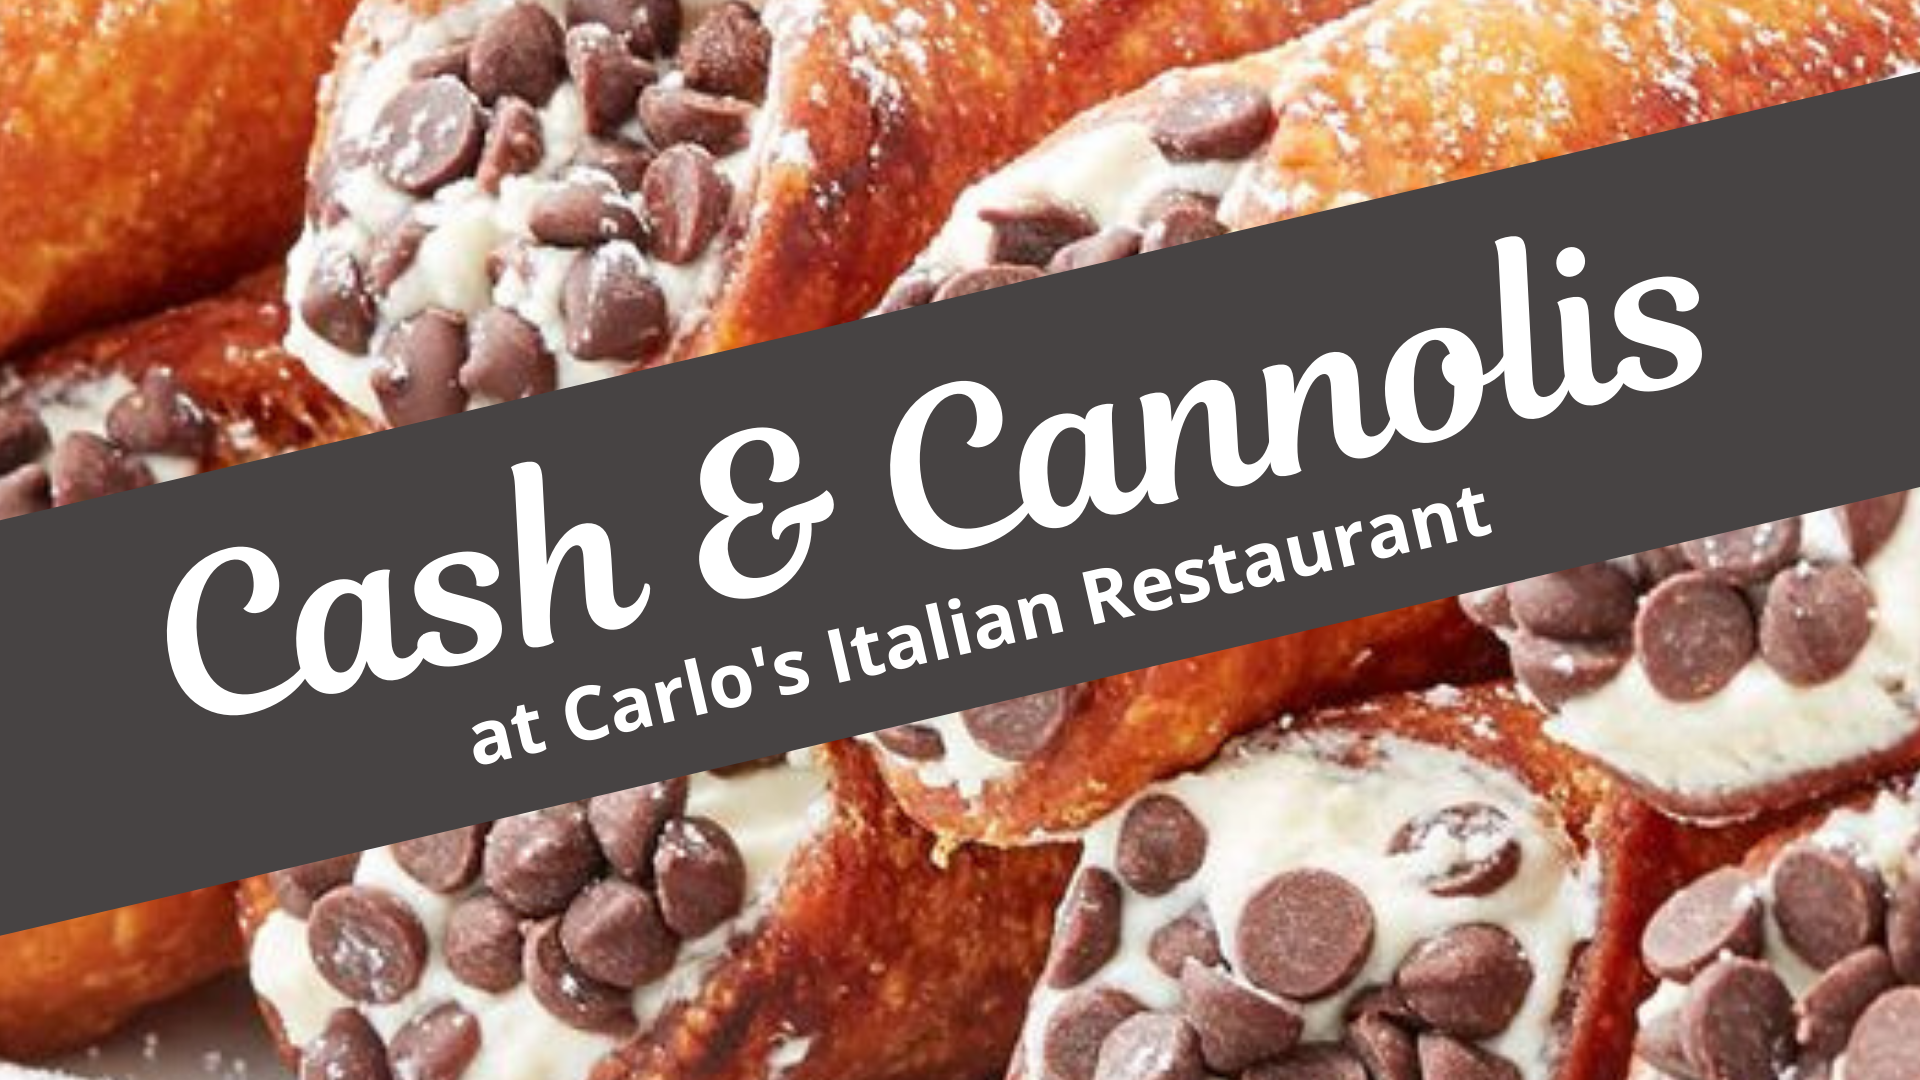 Cash & Cannolis